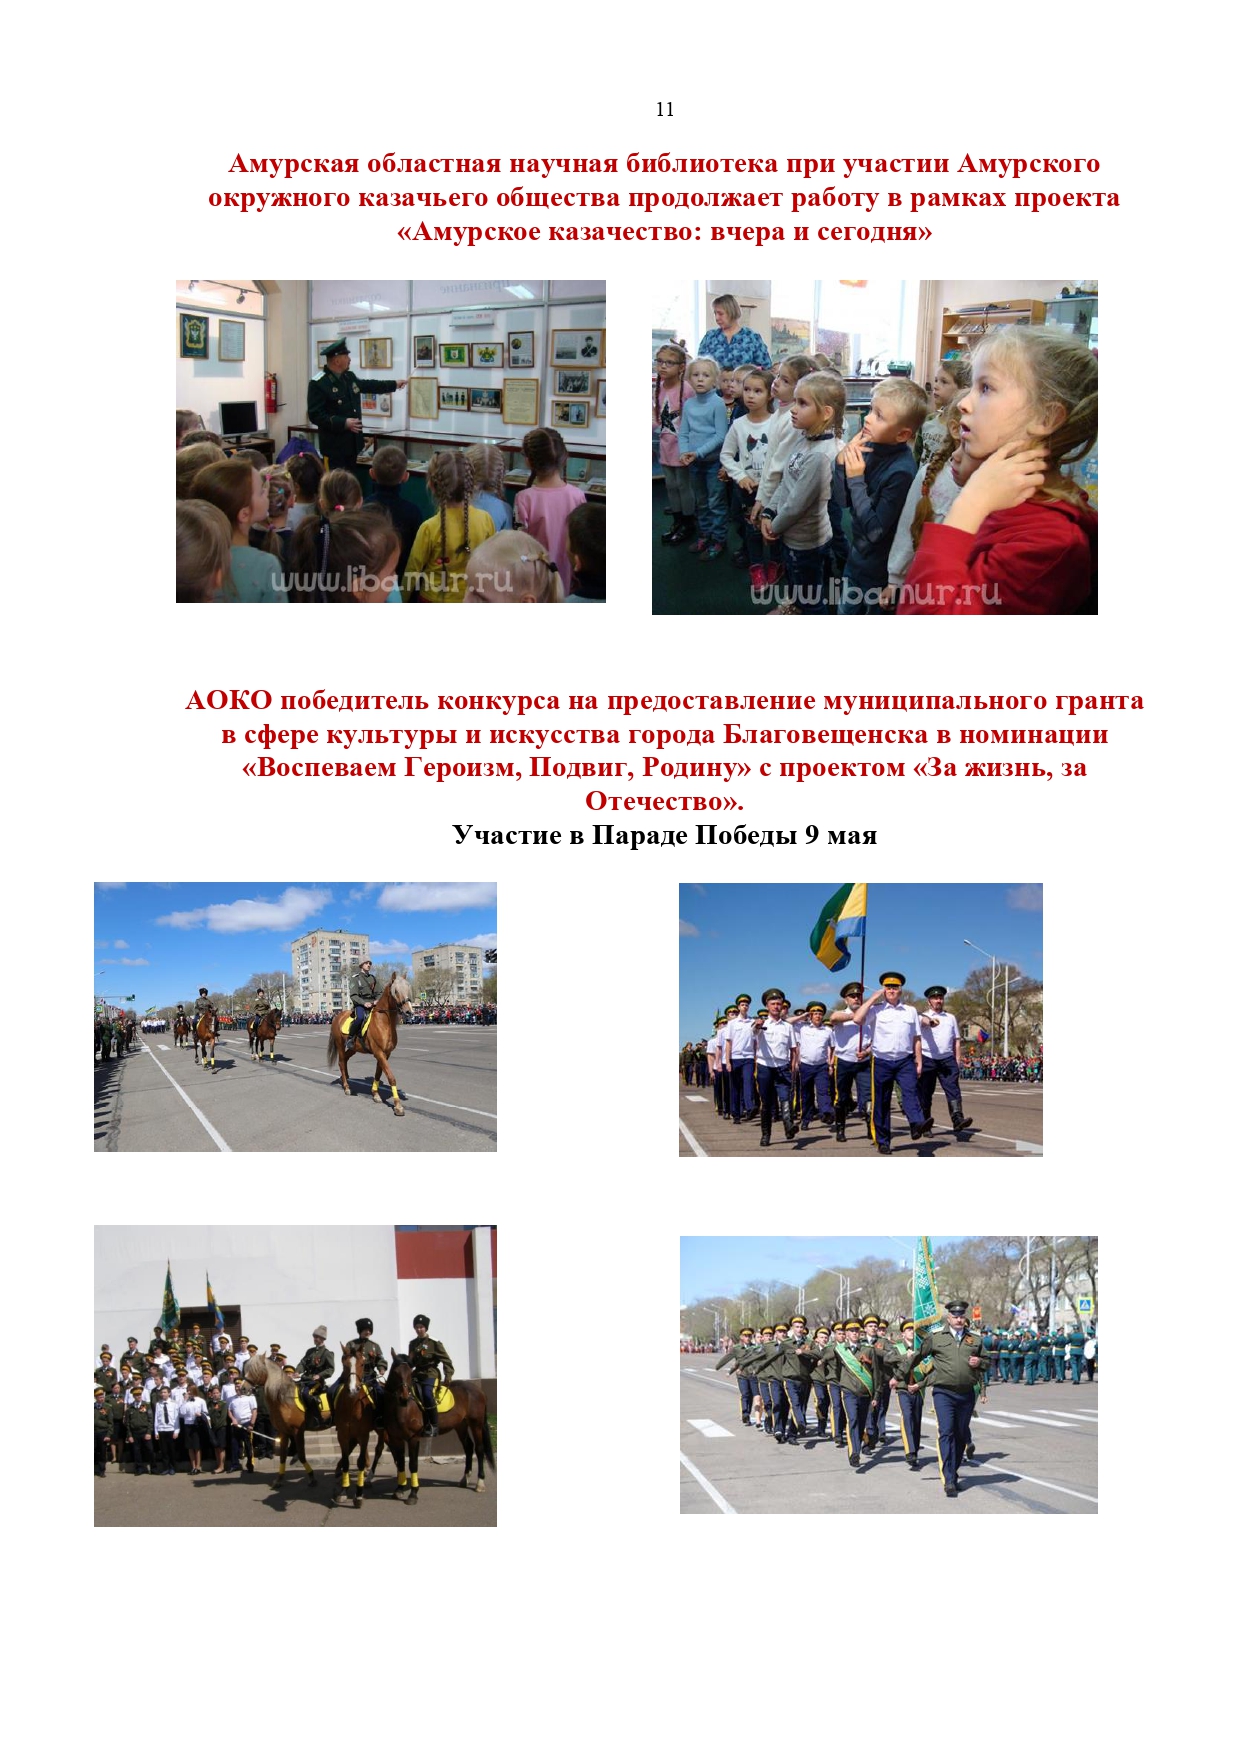 Публичный годовой отчет Амурского окружного казачьего общества за 2019 год Page 0011